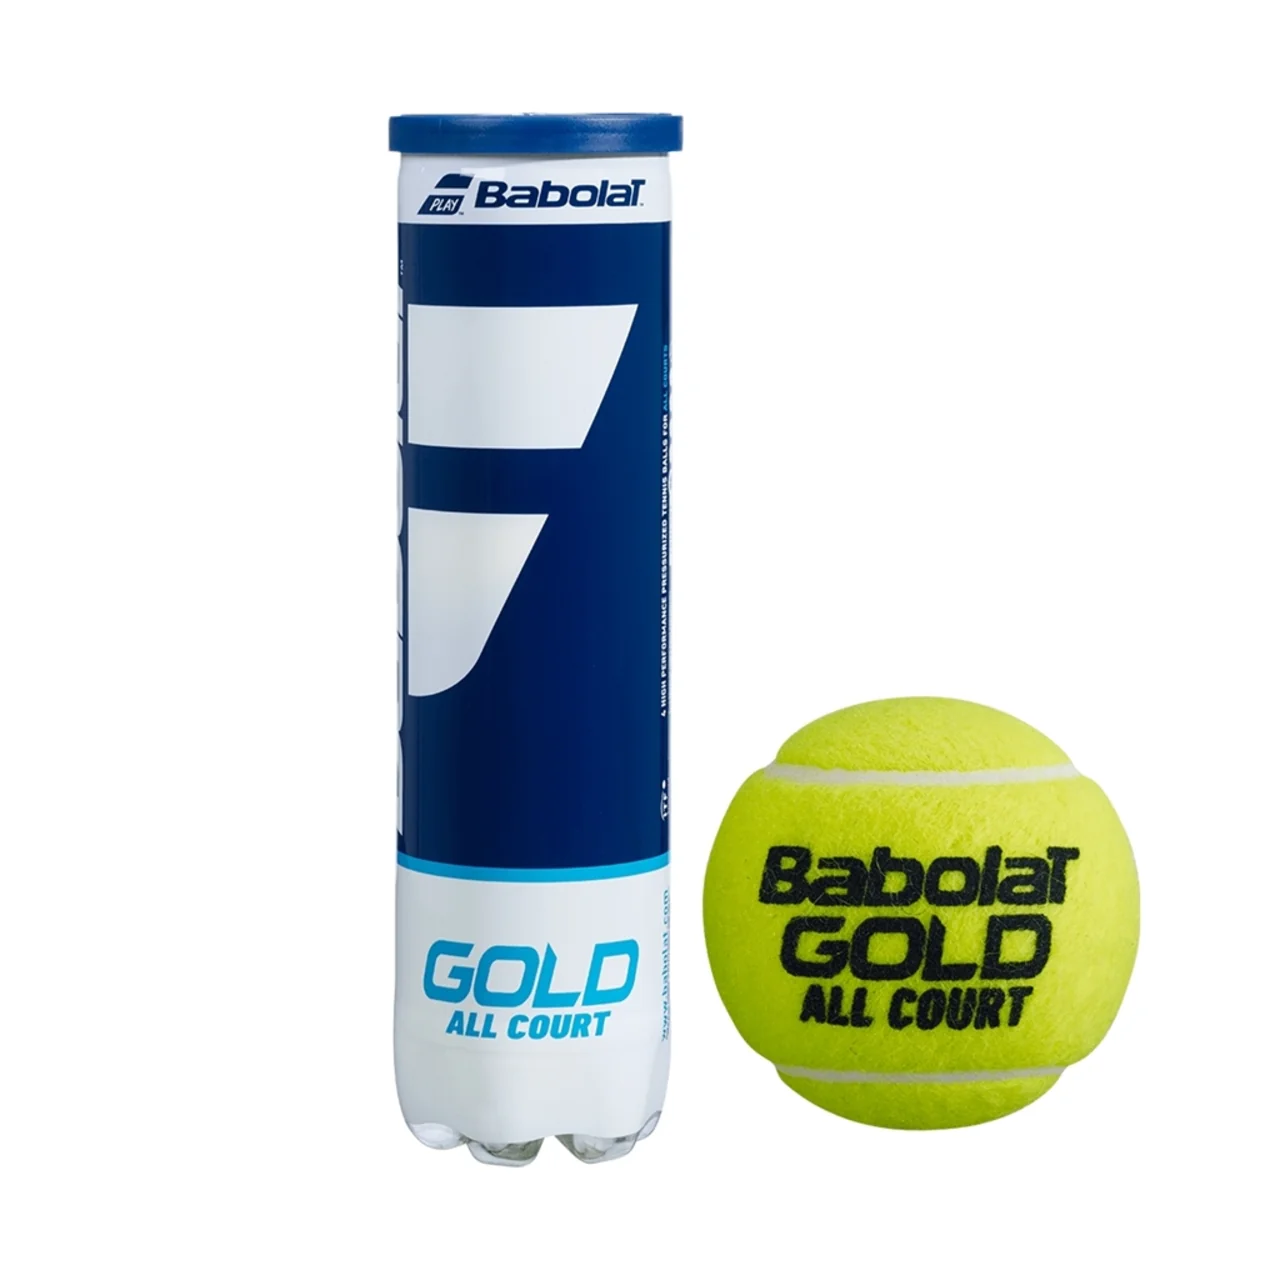 Babolat Gold 3 tubes